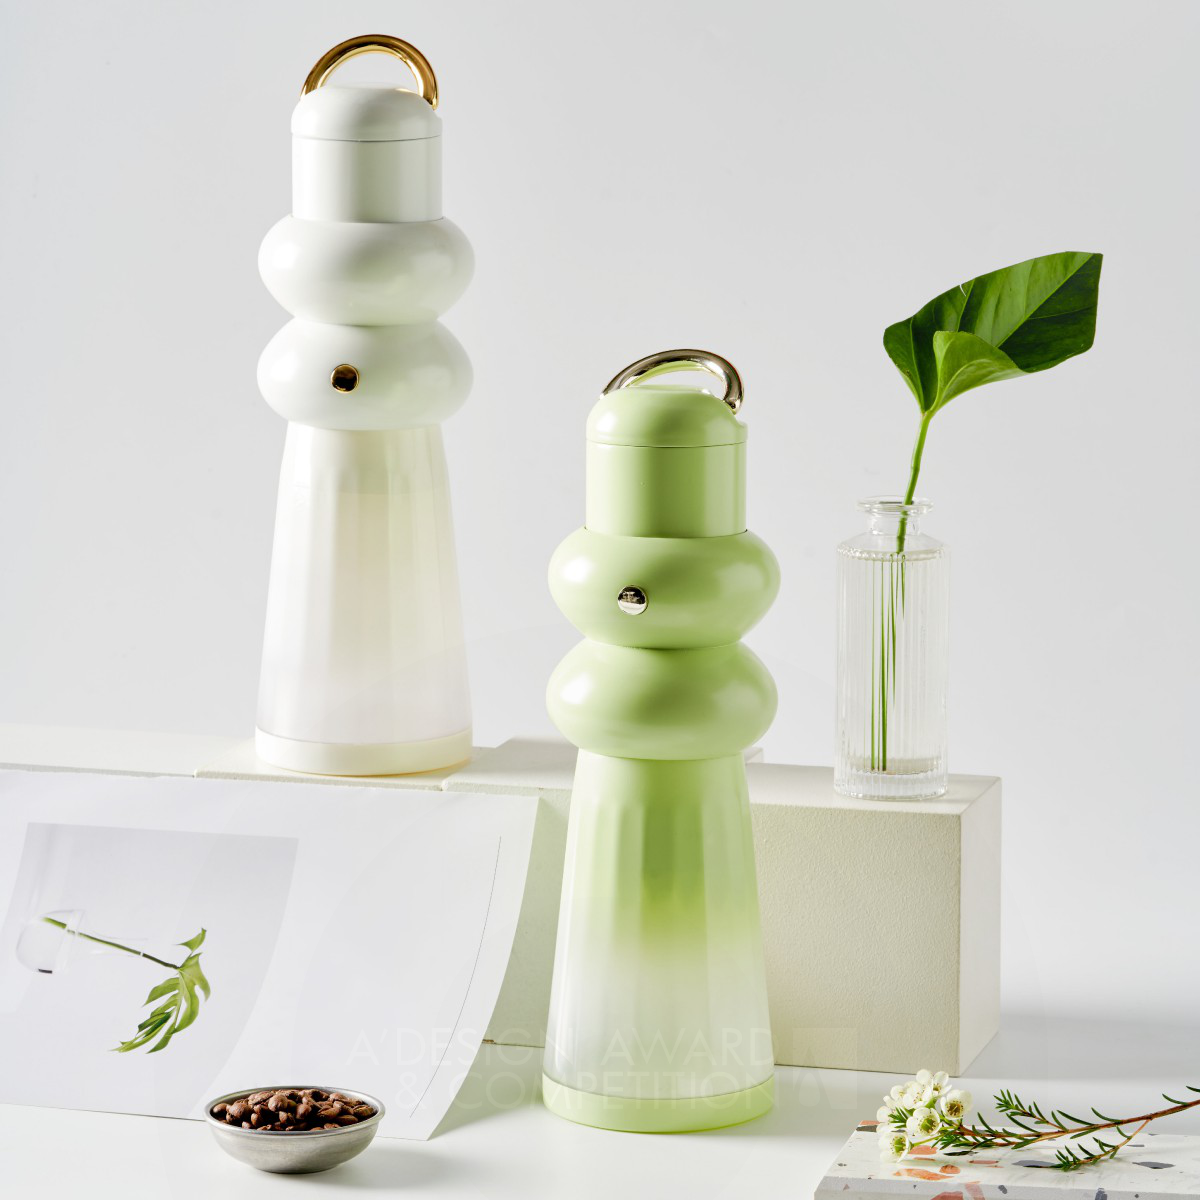 Vase Multifunctional Juicer by Shuyun Li